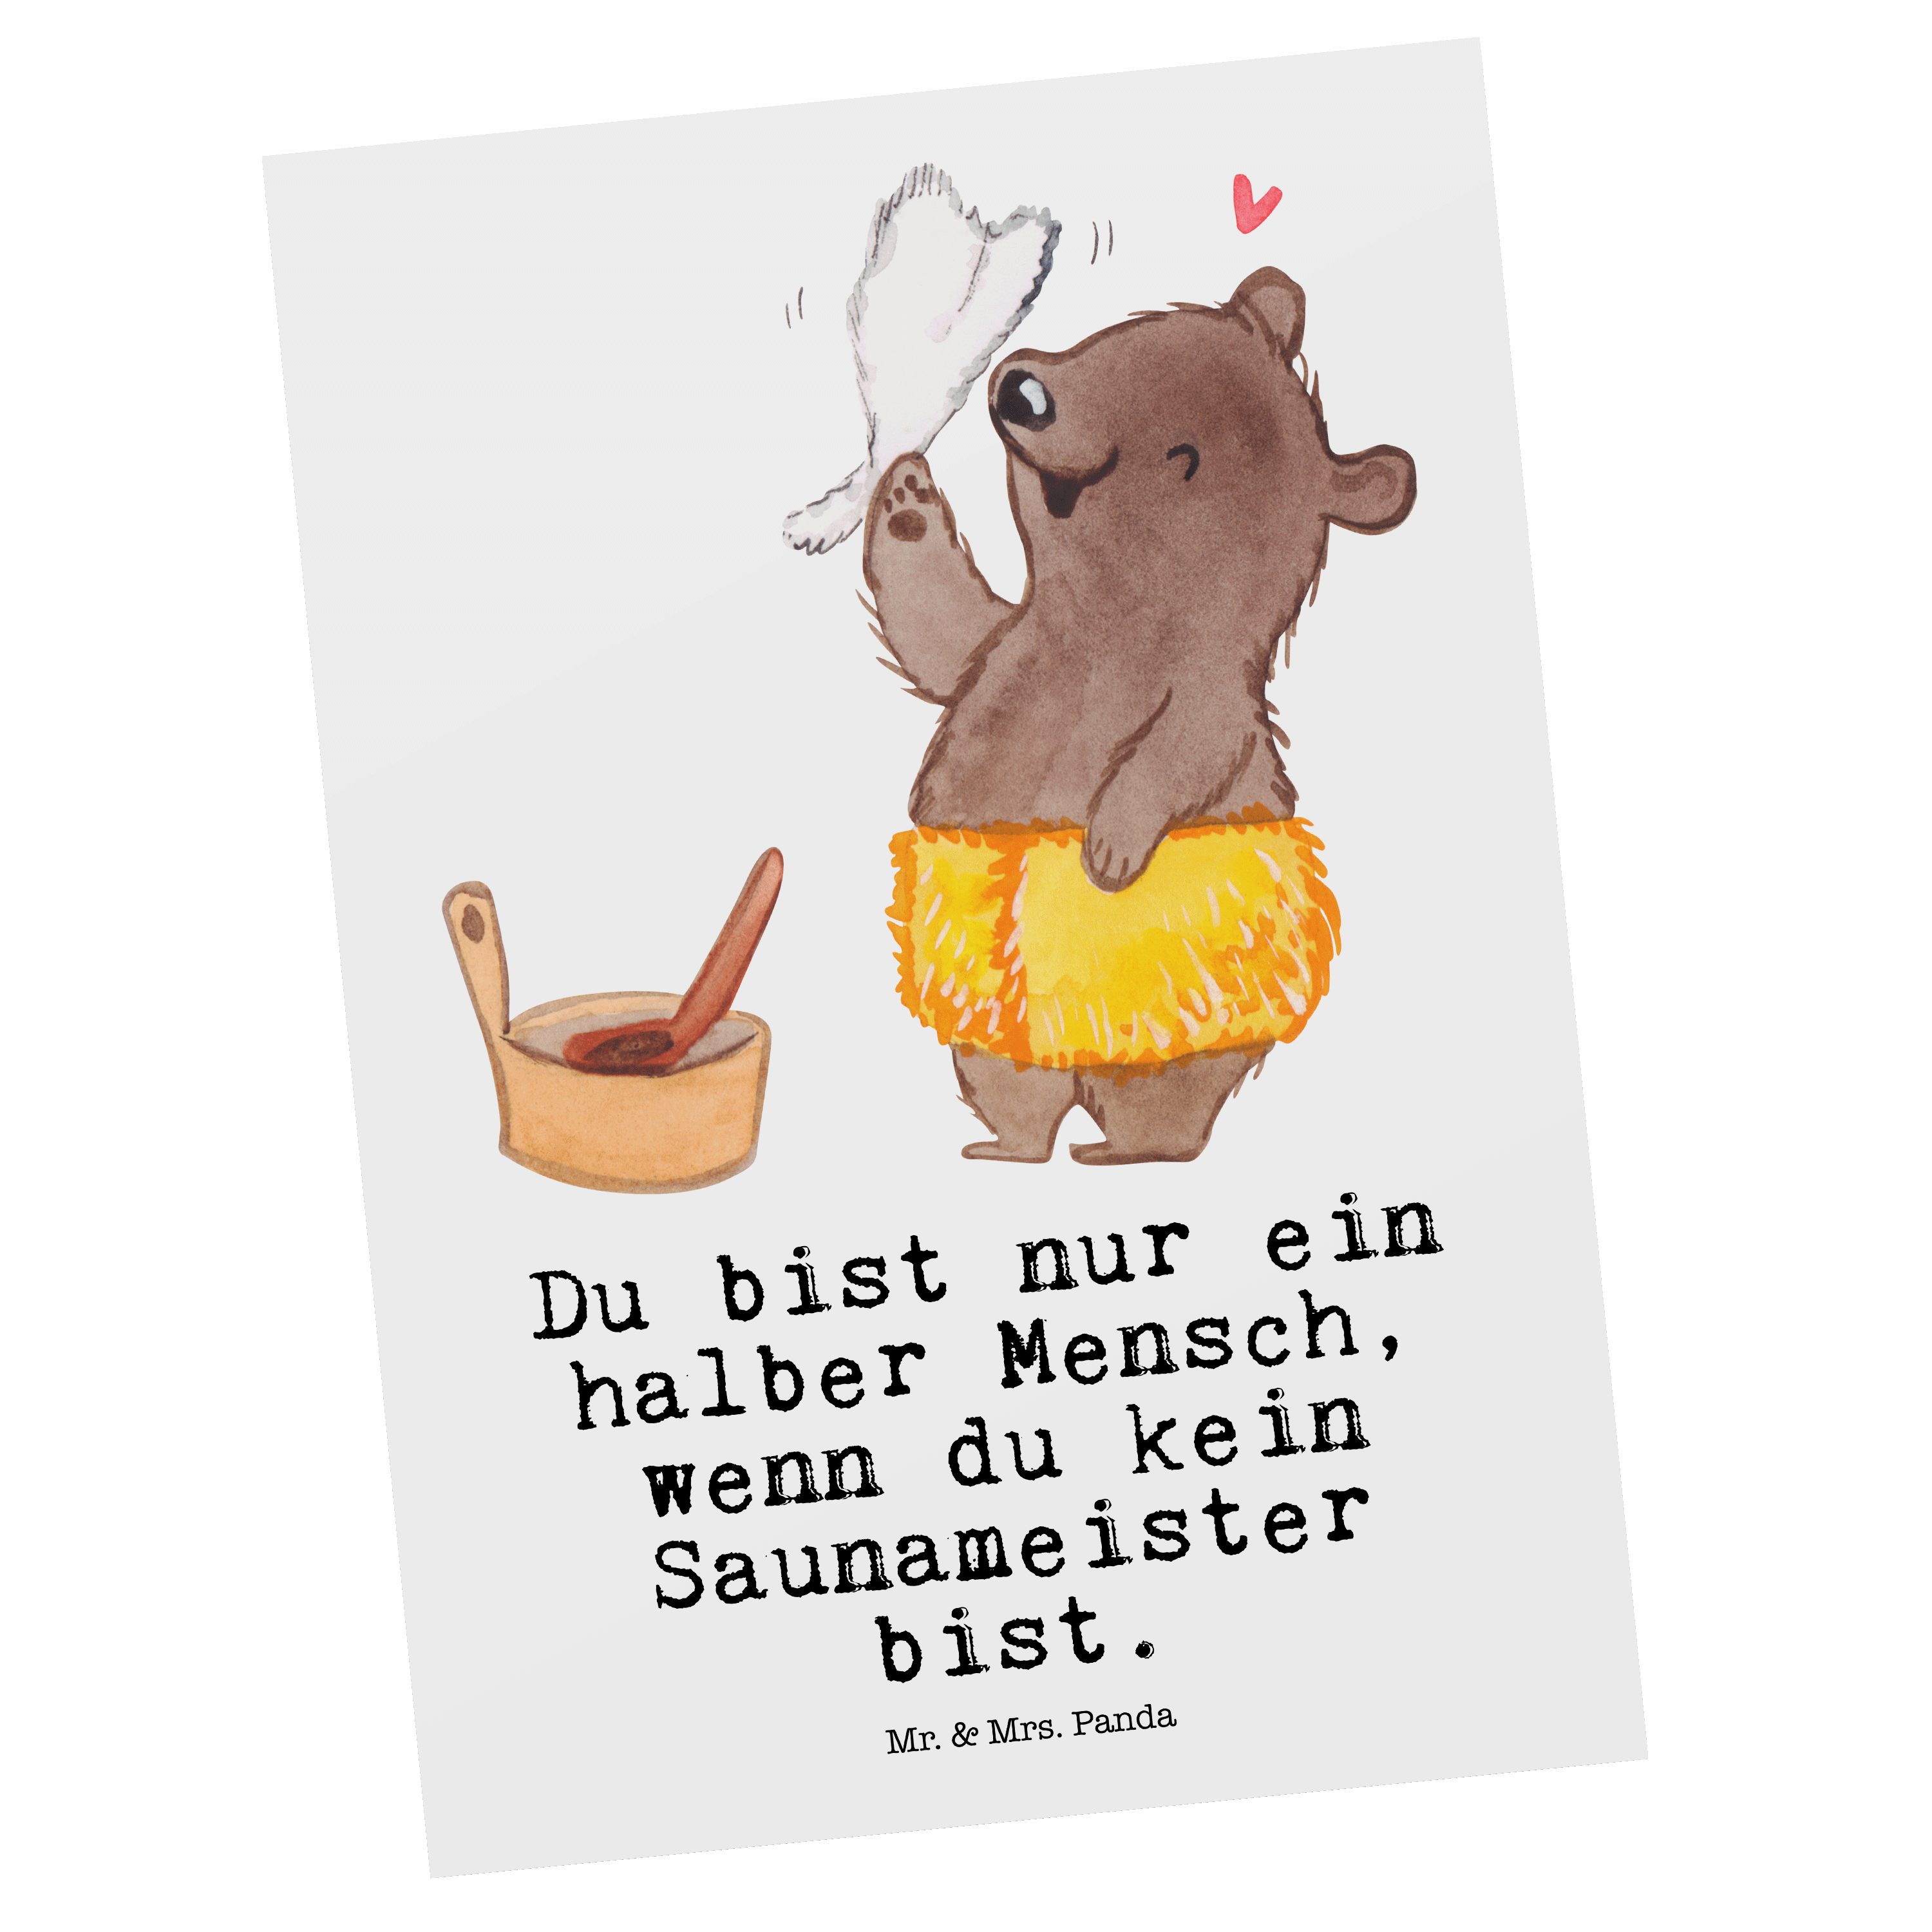 Mr. & Mrs. Weiß - mit Panda Koll Geschenk, Saunameister Herz Dankeskarte, - Postkarte Grußkarte